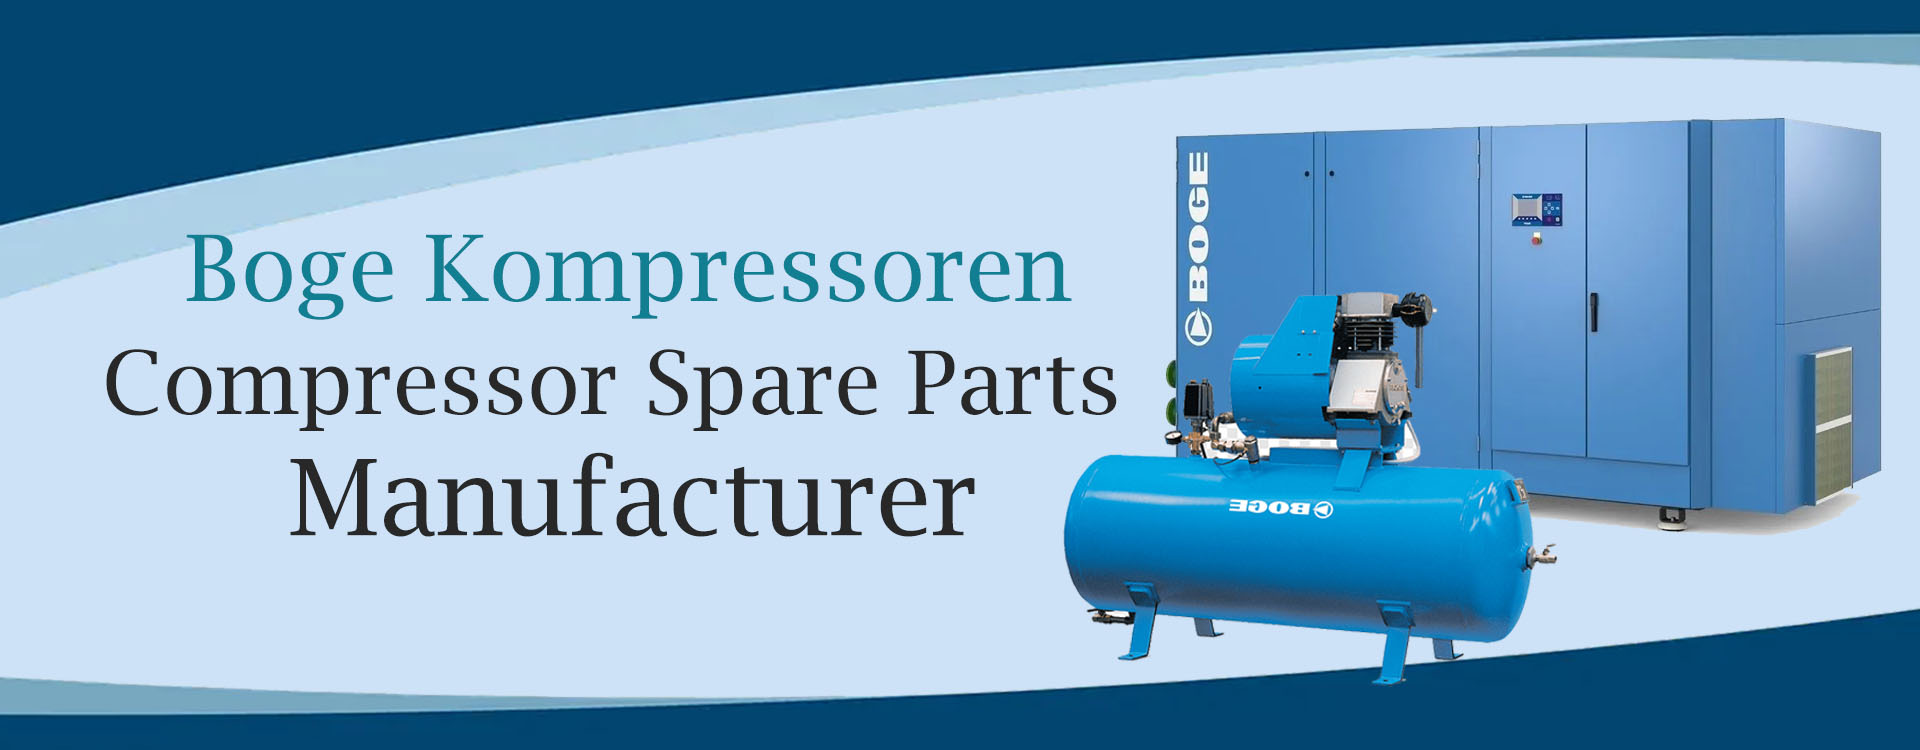 Boge kompressoren Spare Part Manufacturer & Supplier In india